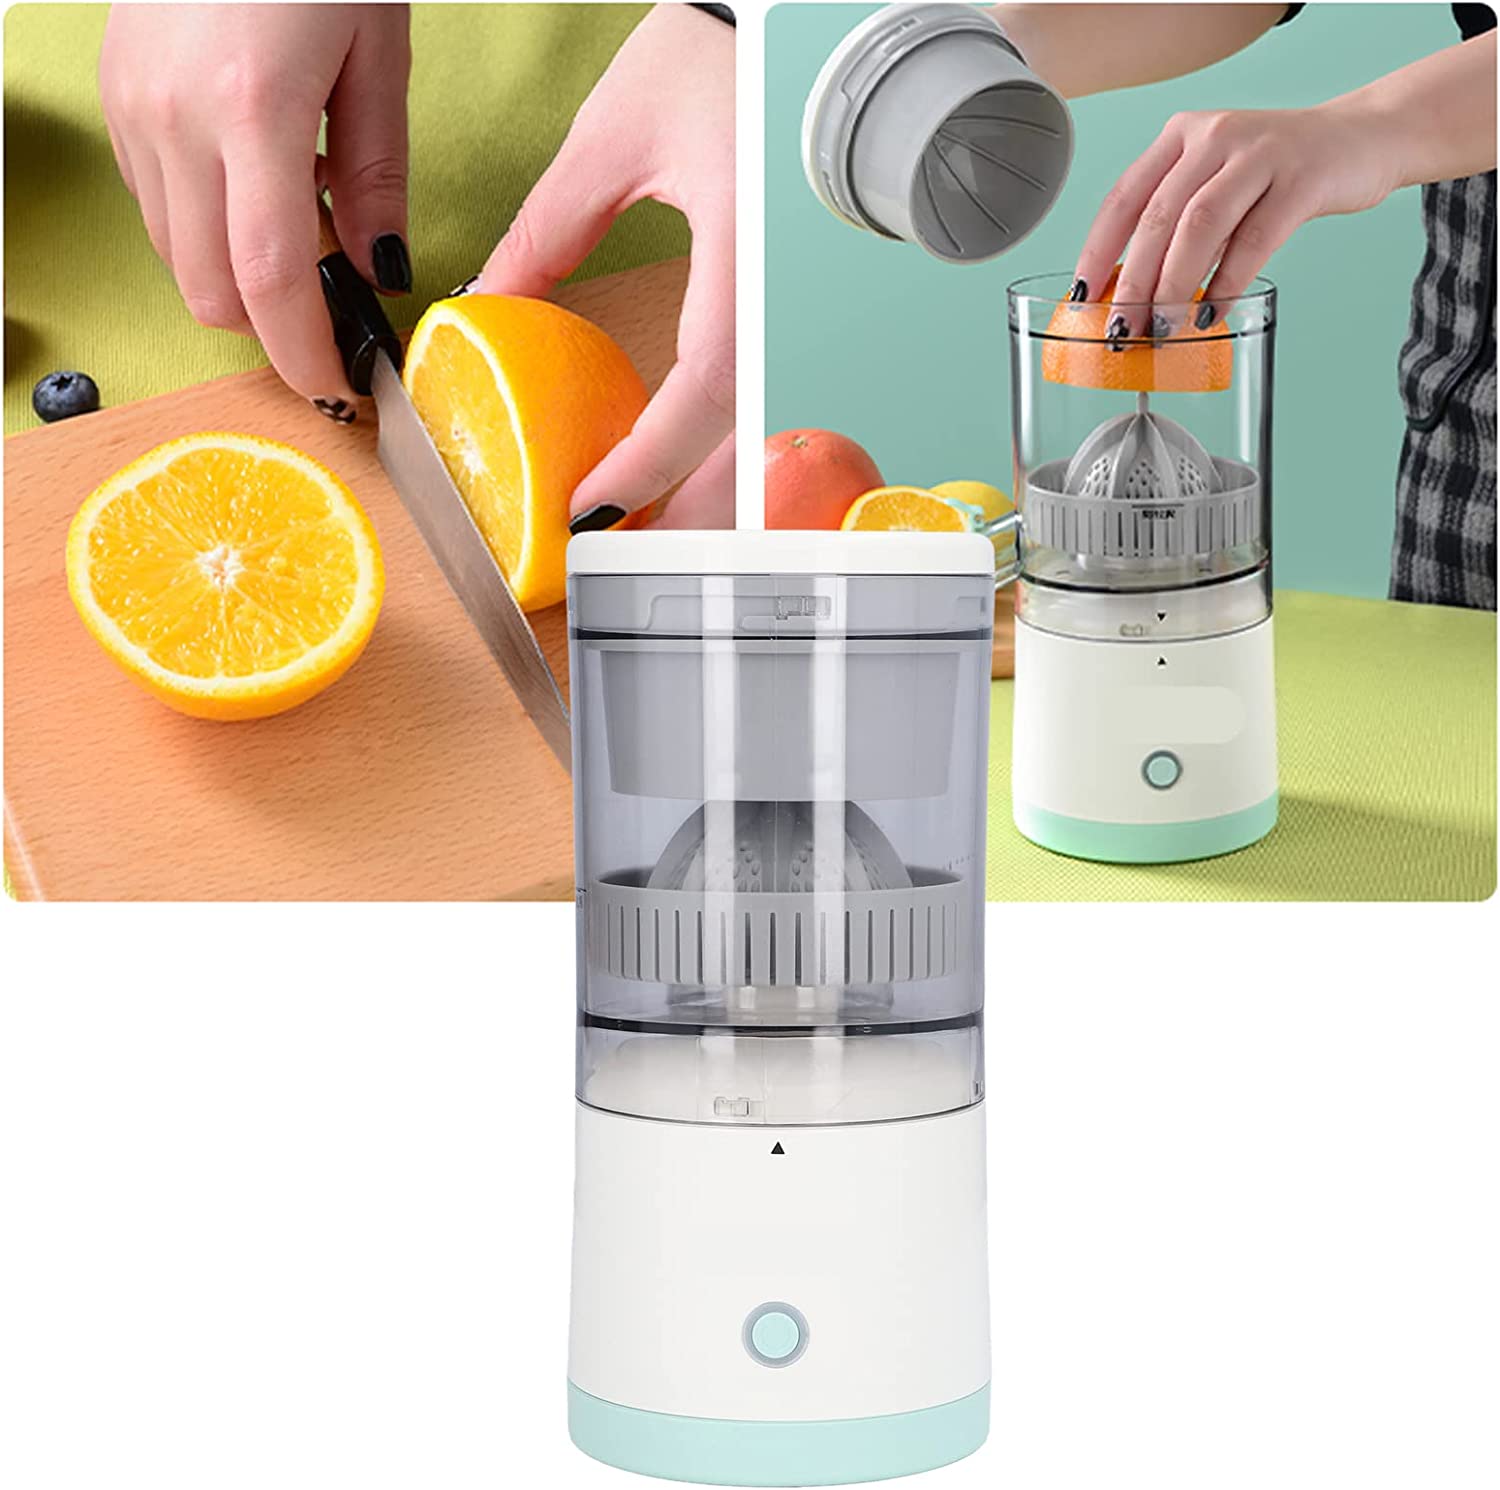 Citrus Juicer Machines